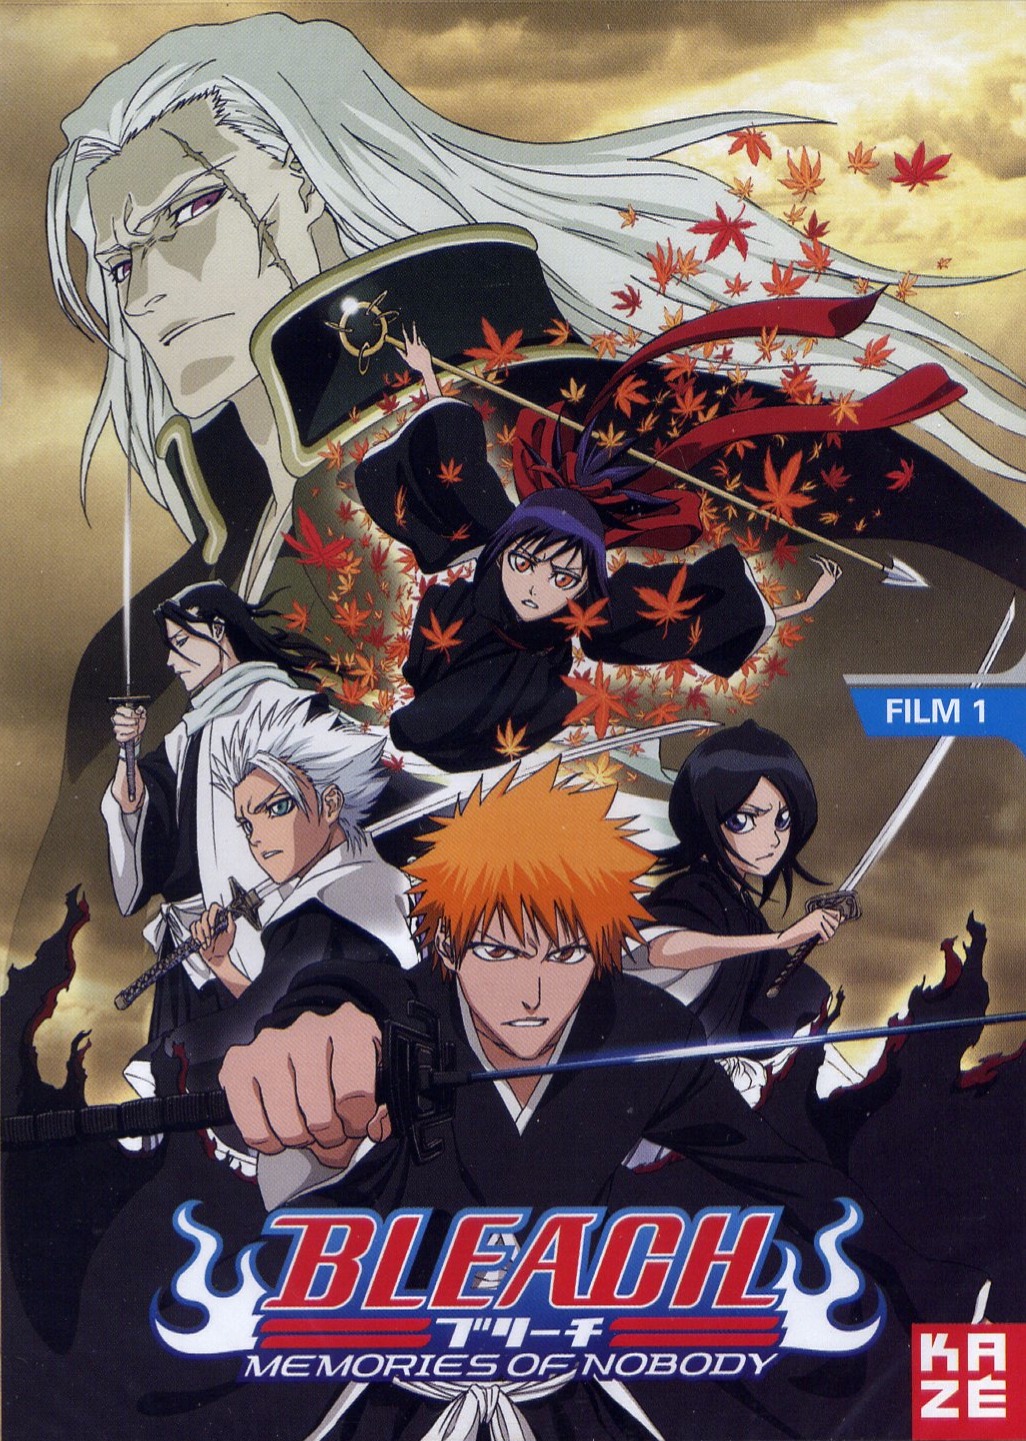 Bleach movie 1 | Japanese Anime Wiki | FANDOM powered by Wikia1026 x 1441